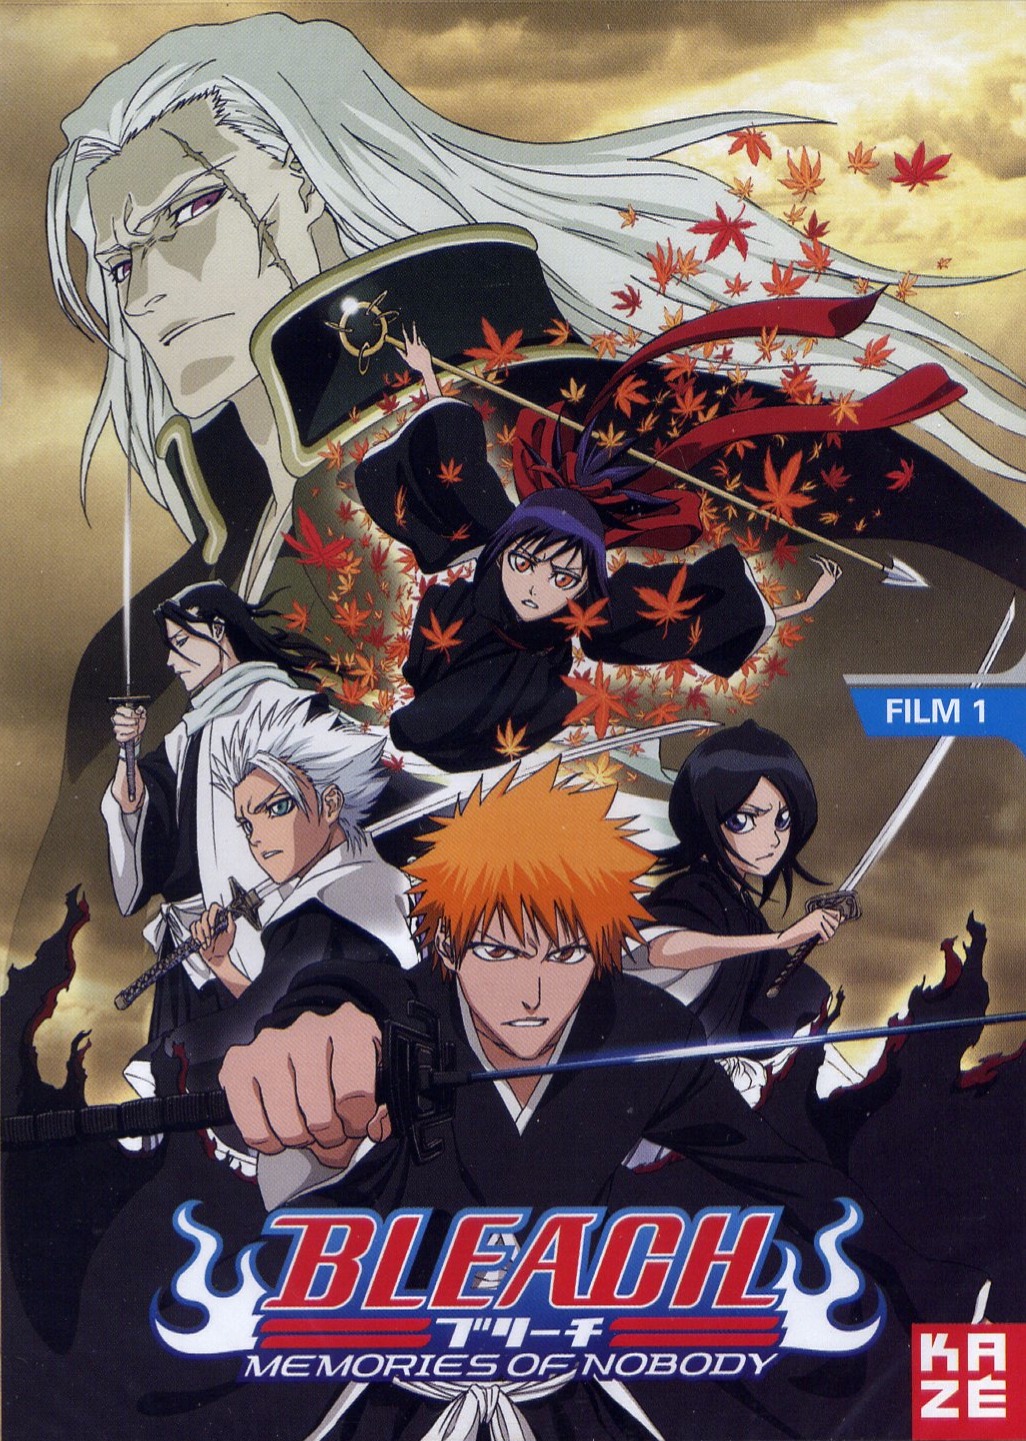 Bleach movie 1 | Japanese Anime Wiki | FANDOM powered by Wikia1026 x 1441